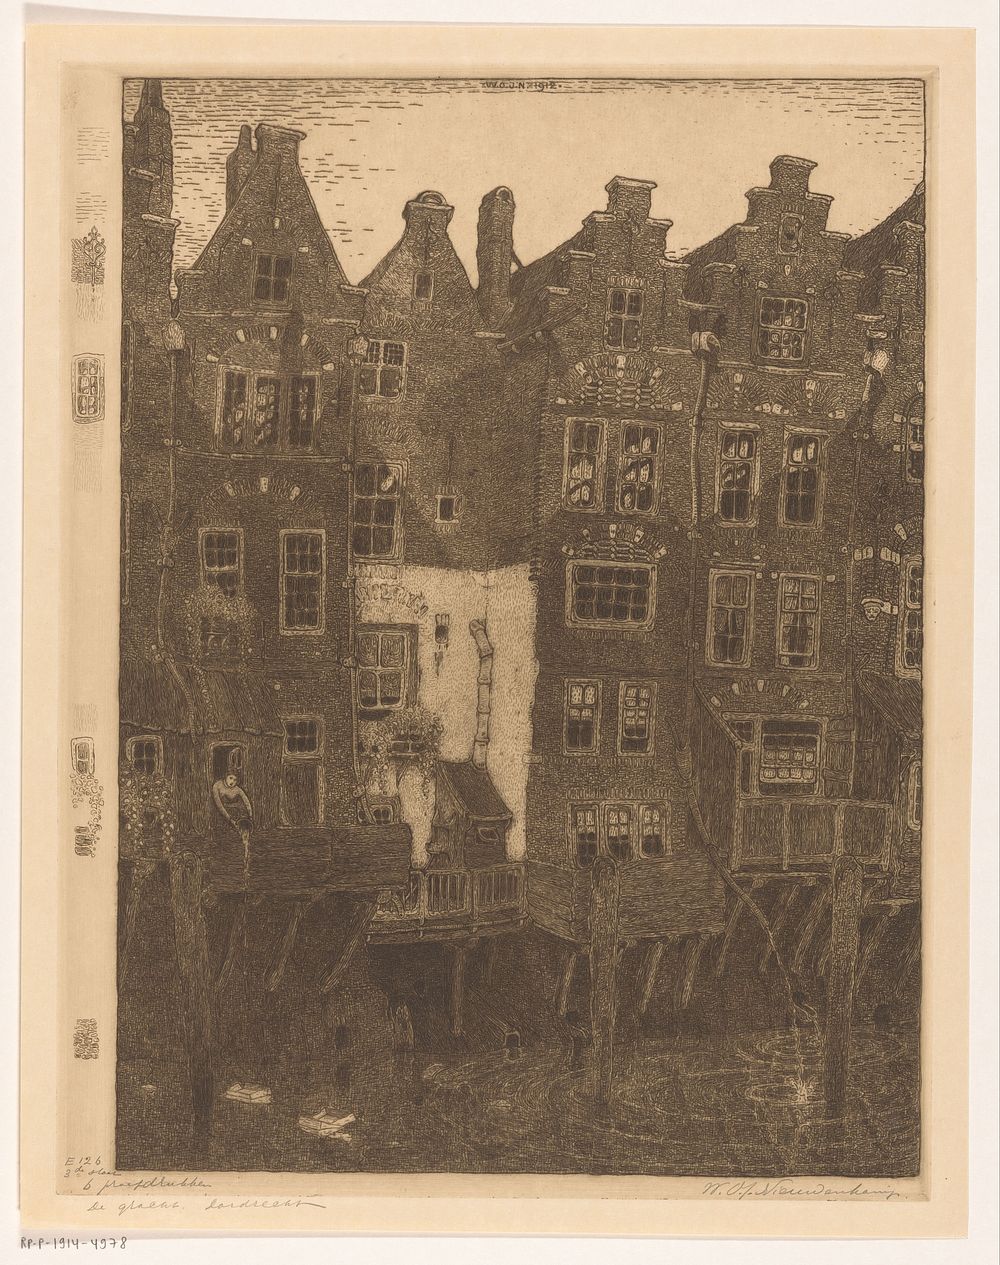 Huizen aan de Voorstraatshaven in Dordrecht (1912) by Wijnand Otto Jan Nieuwenkamp